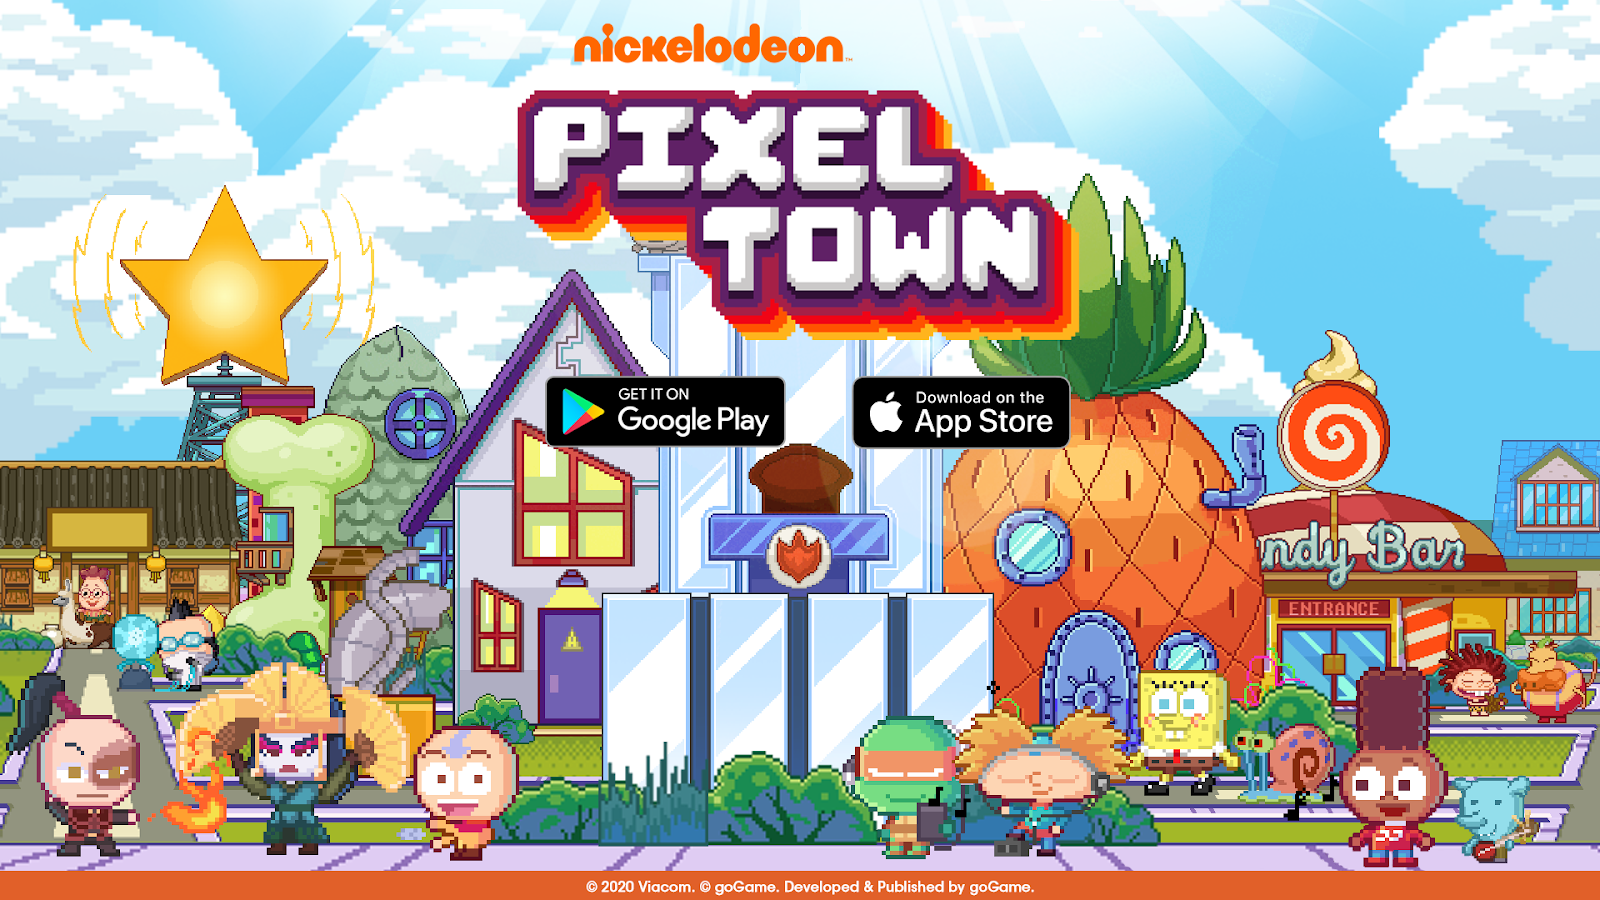 Nickelodeon pixel town